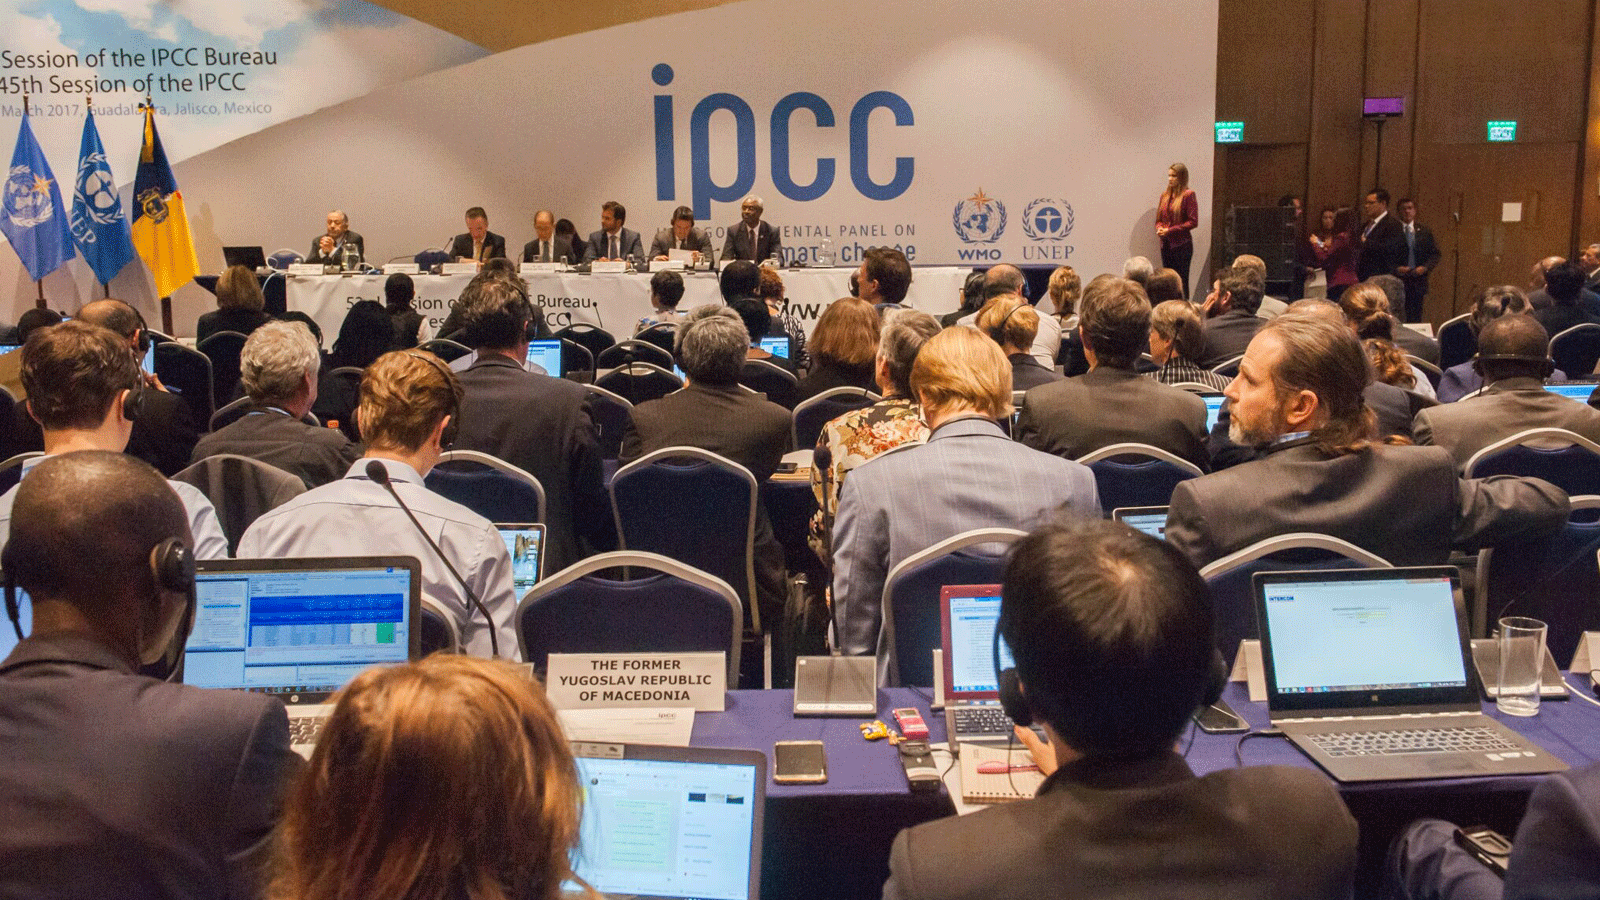 المندوبون والخبراء يحضرون حفل افتتاح الدورة الخامسة والأربعين للهيئة الحكومية الدولية المعنية بتغير المناخ (IPCC) في غوادالاخارا، المكسيك في 28 آذار\ مارس 2017.